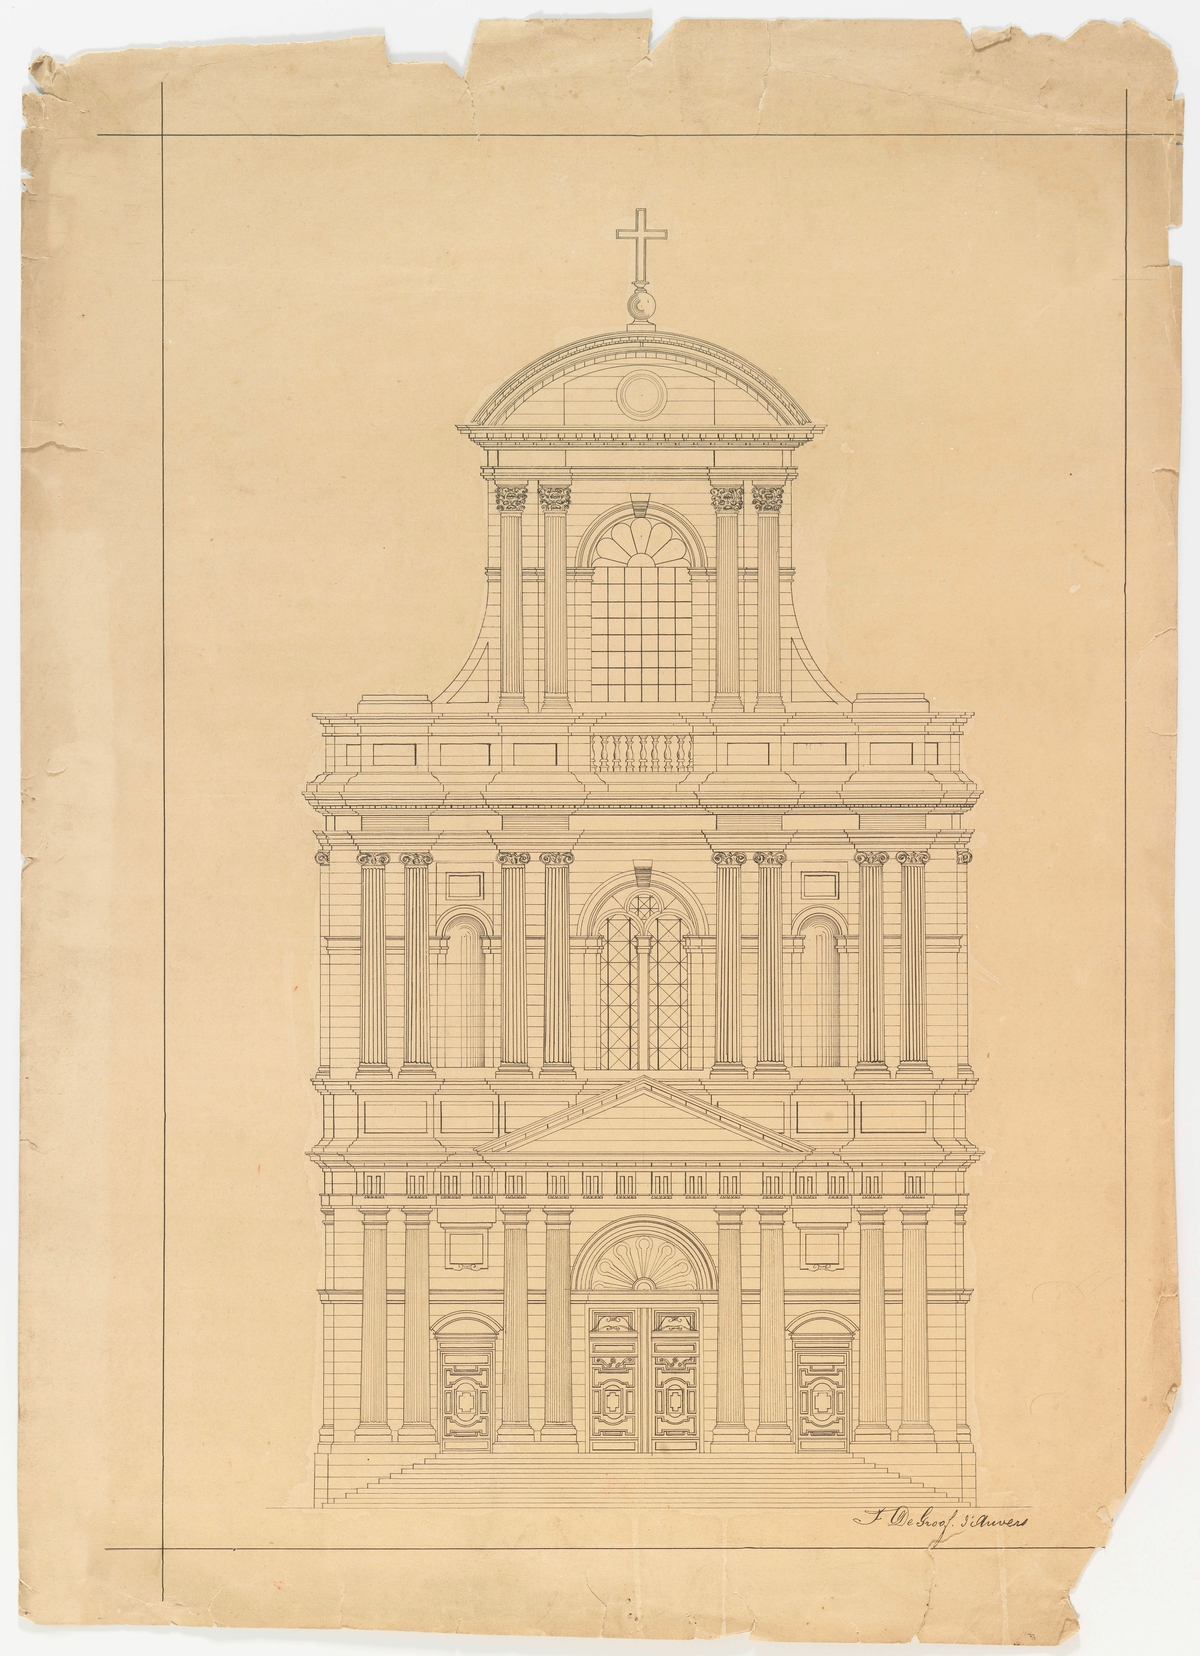 Prent van een tekening betreffende een classicistische kerk door Floris De Groof te Antwerpen